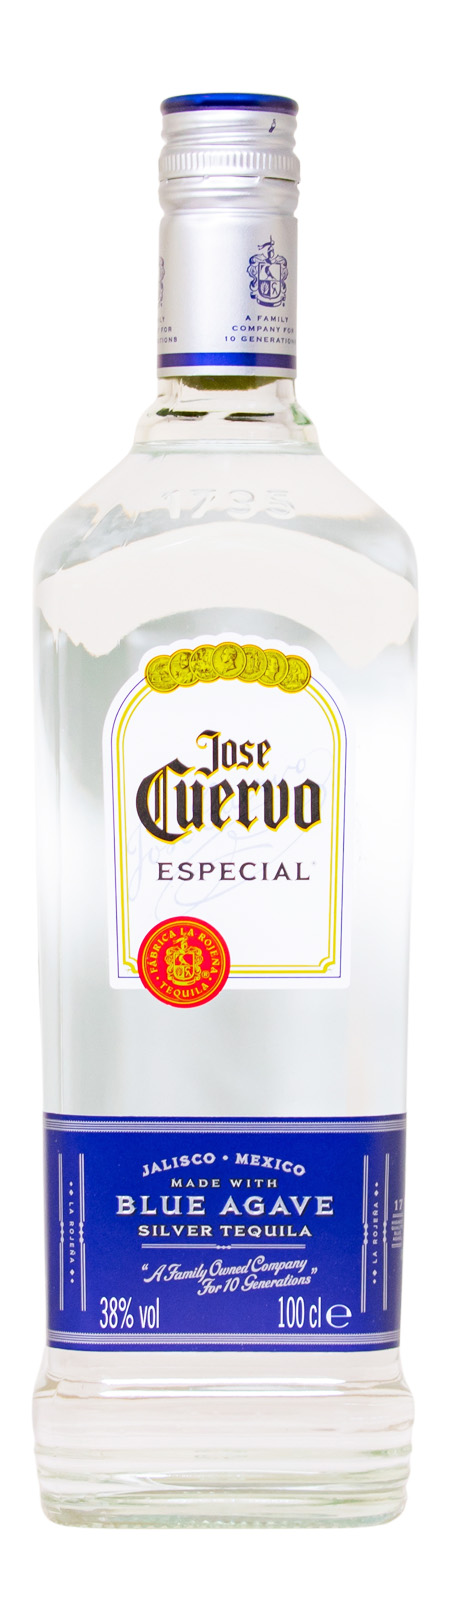 Jose Cuervo Especial Tequila Silver - 1 Liter 38% vol